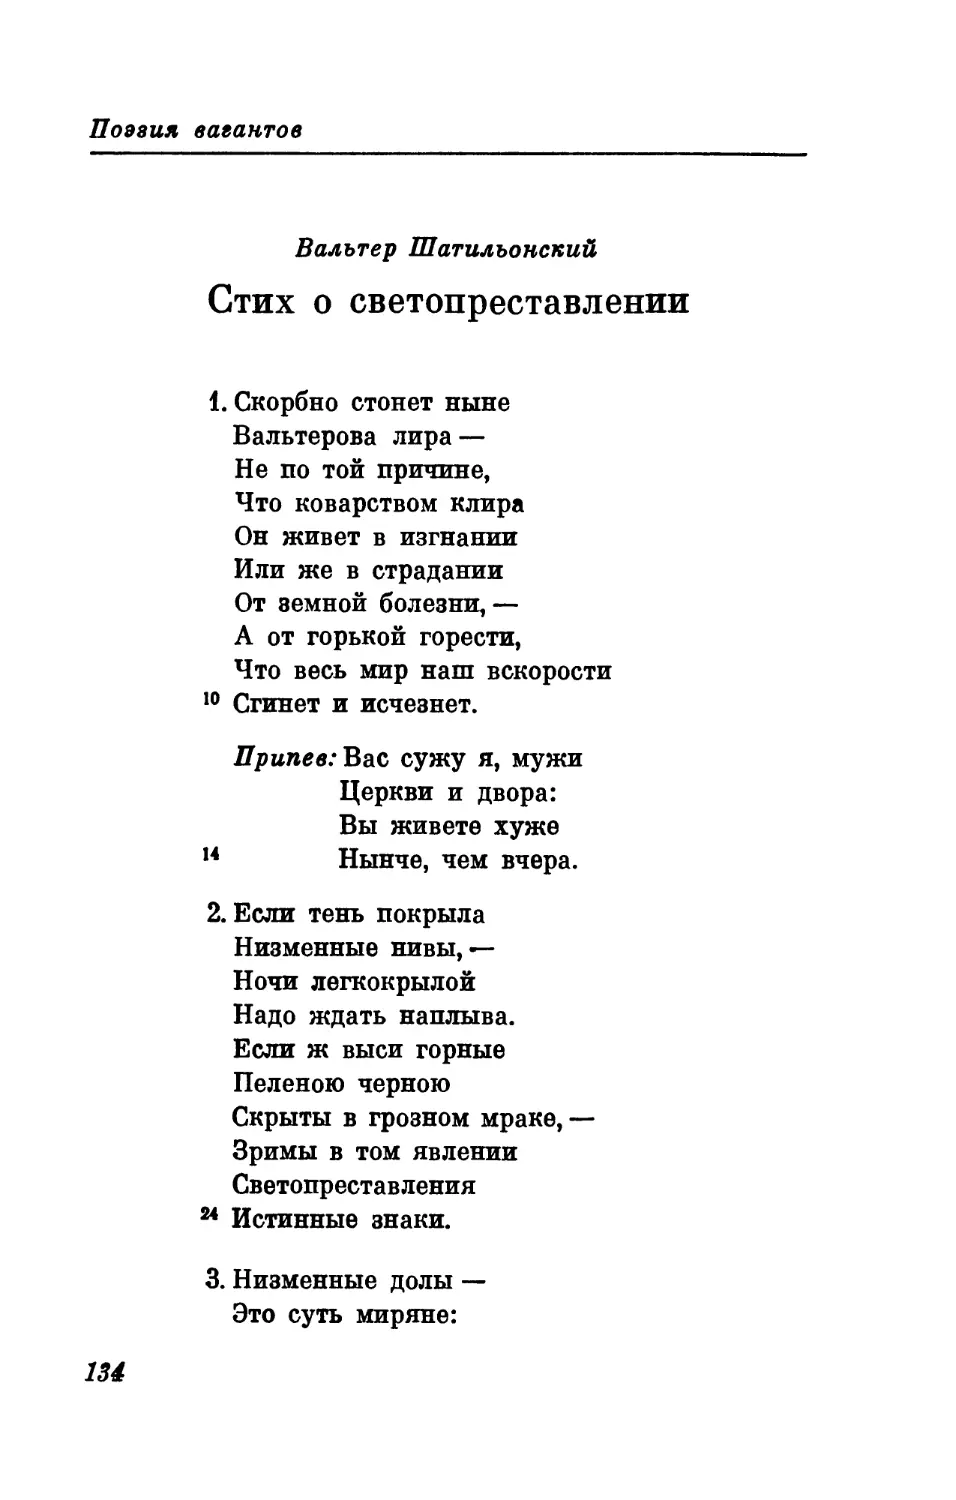 Вальтер Шатильонский, Стих о светопреставлении